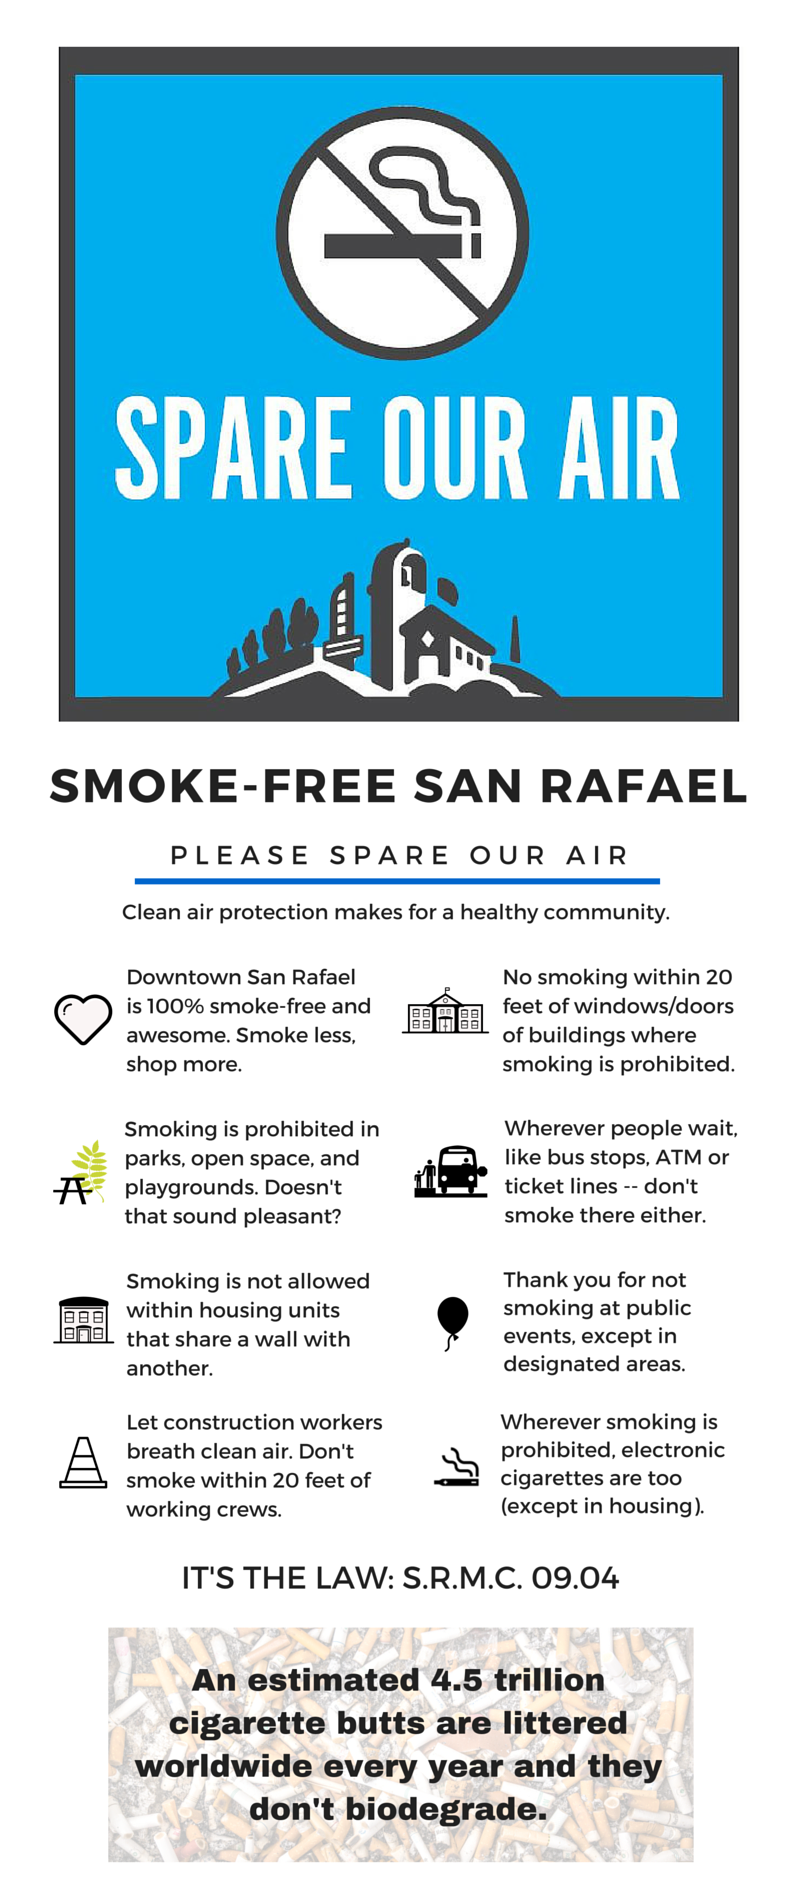 Smoke-free San Rafael